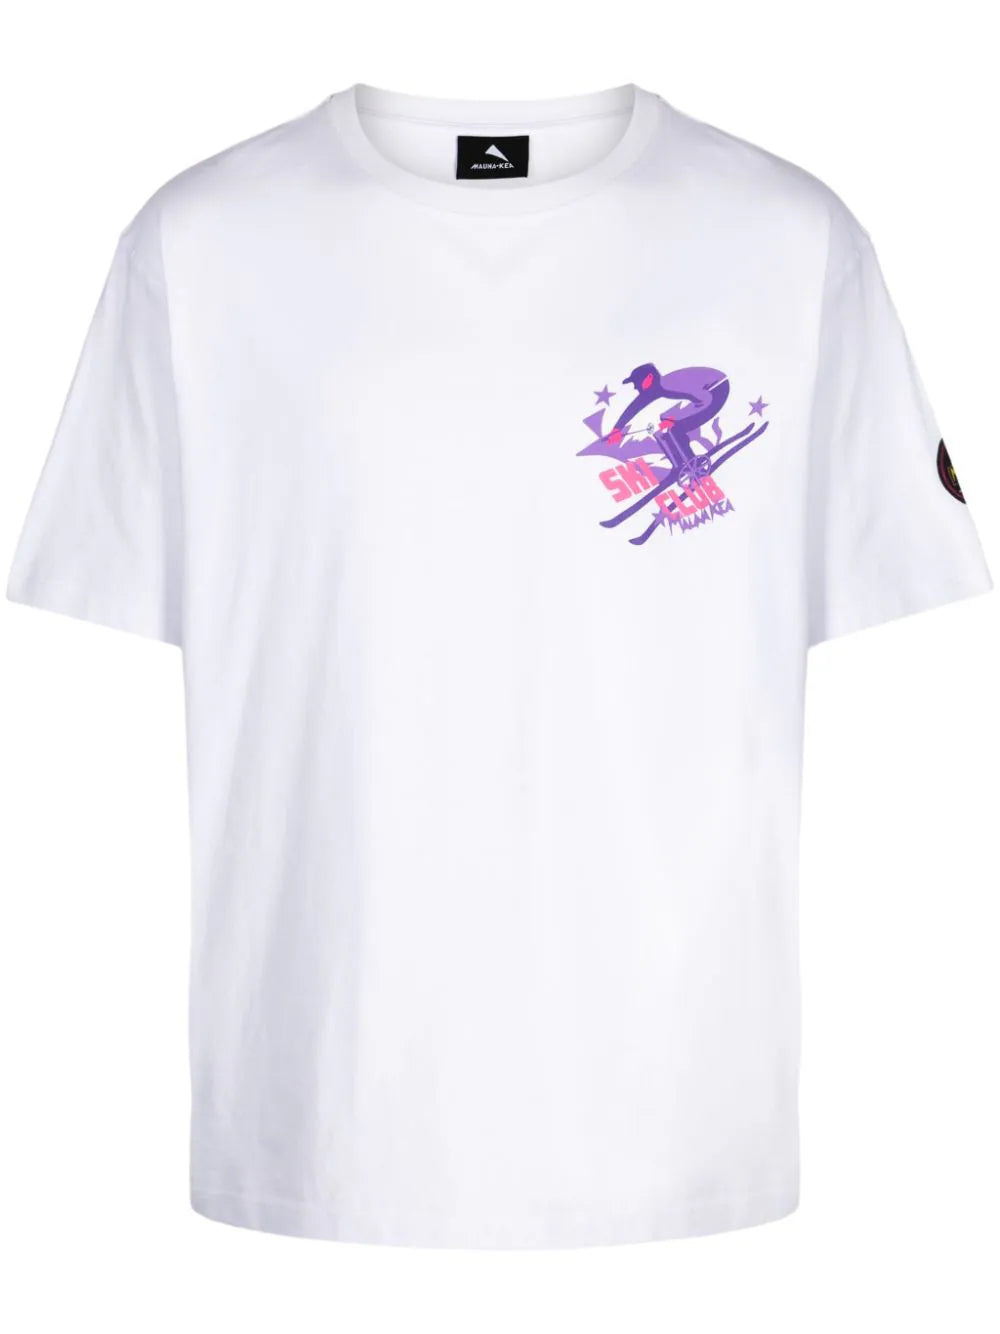 Ski Club cotton T-shirt